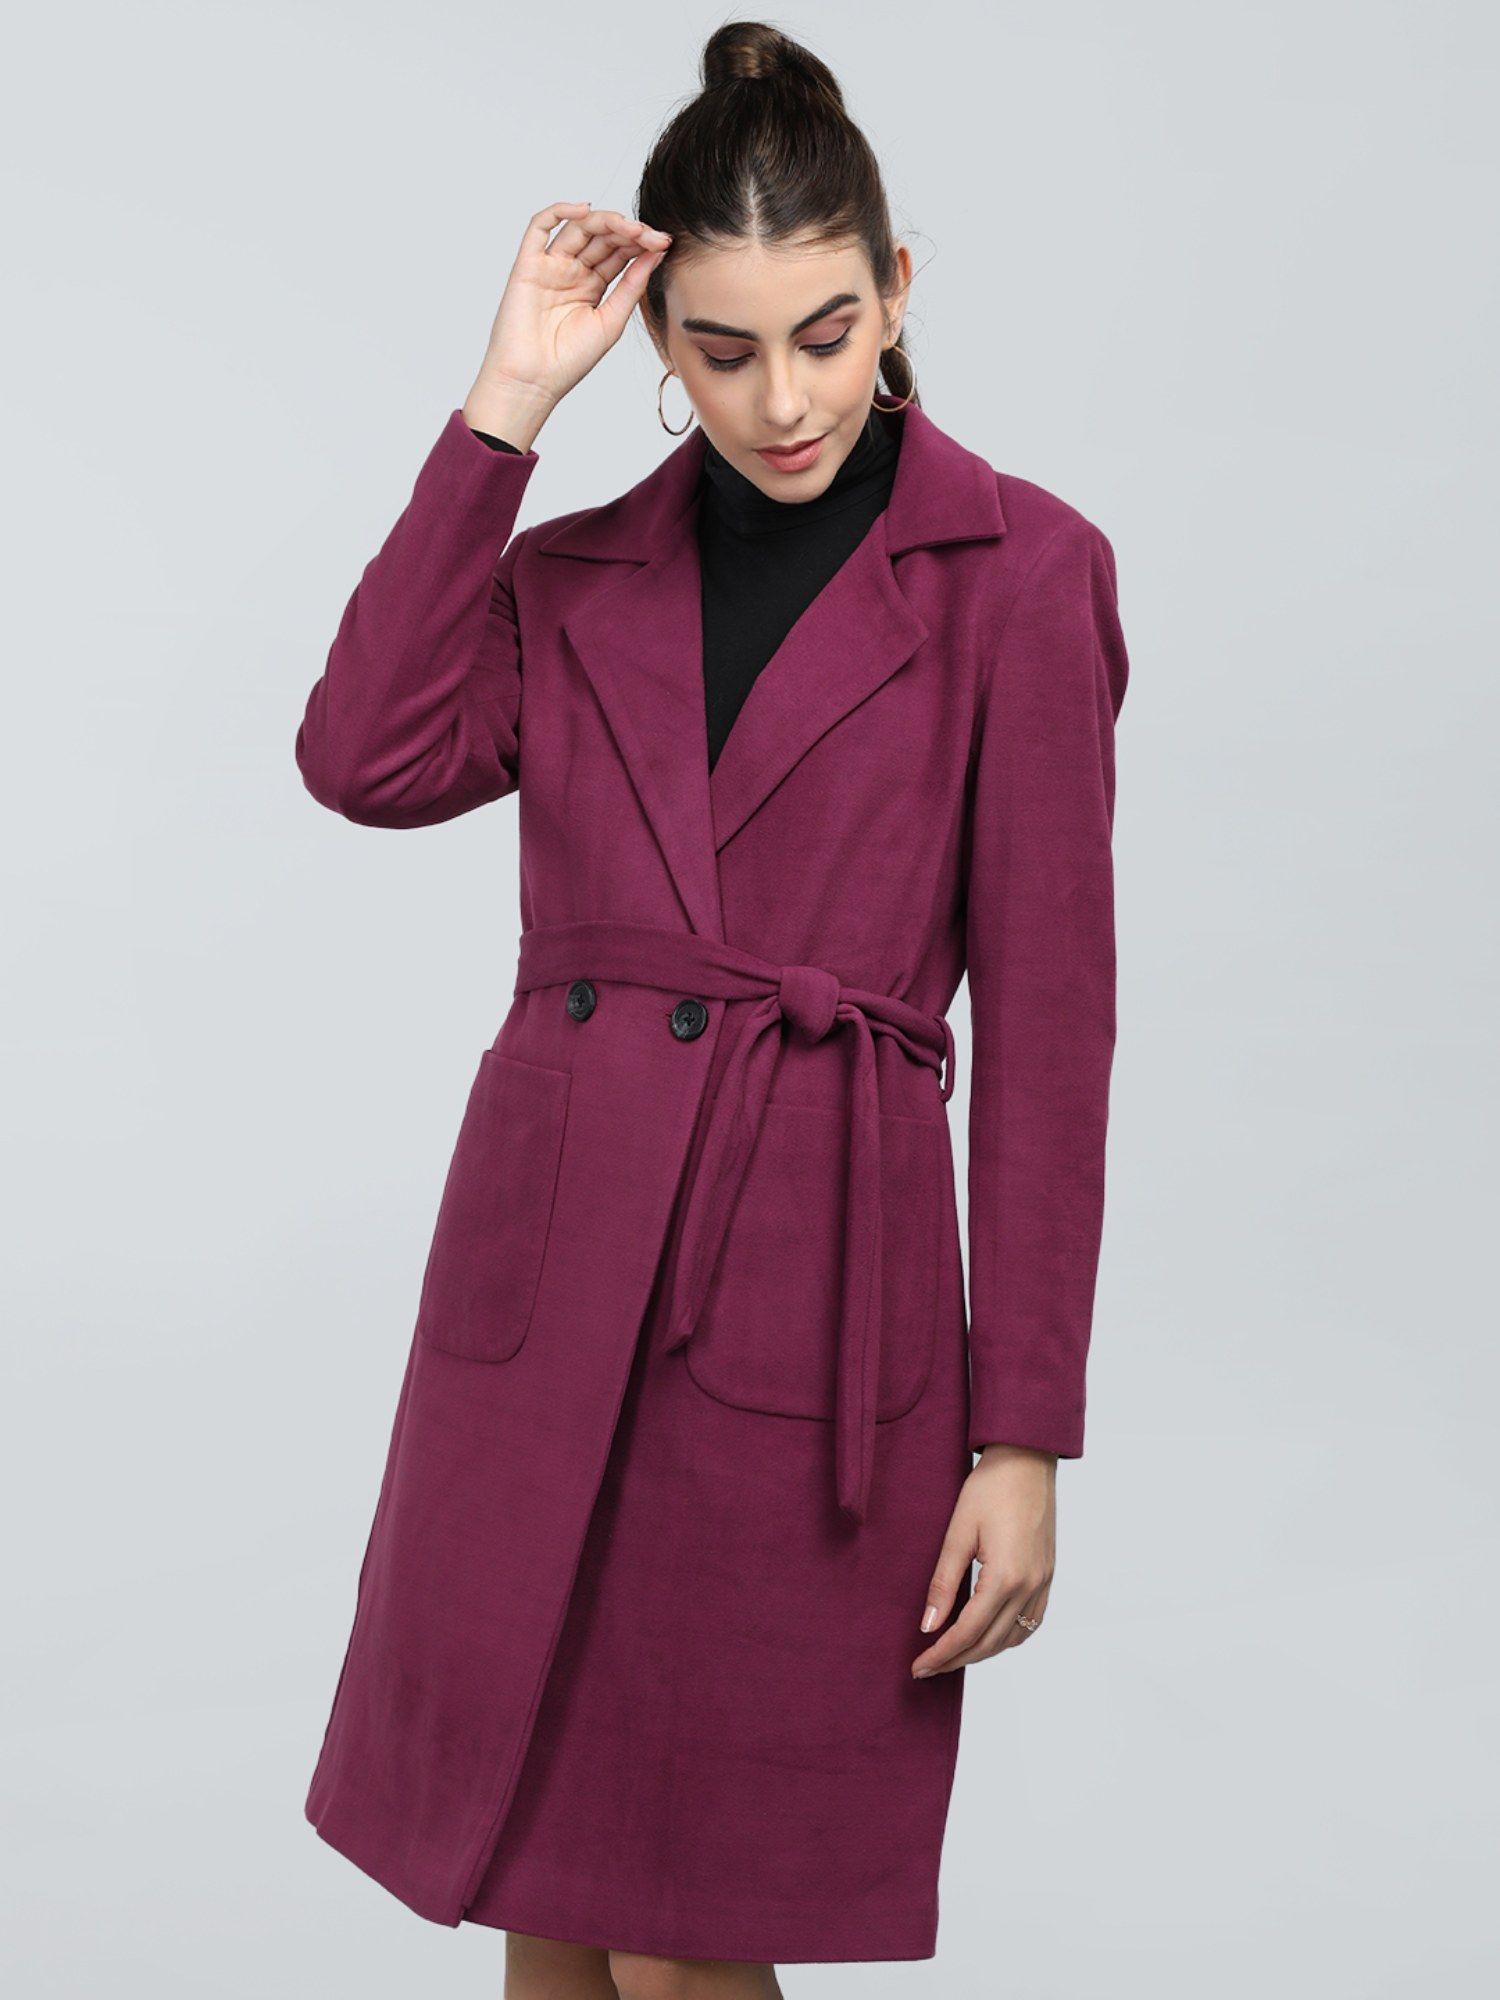 women winter wear stylish purple coat with belt (set of 2)